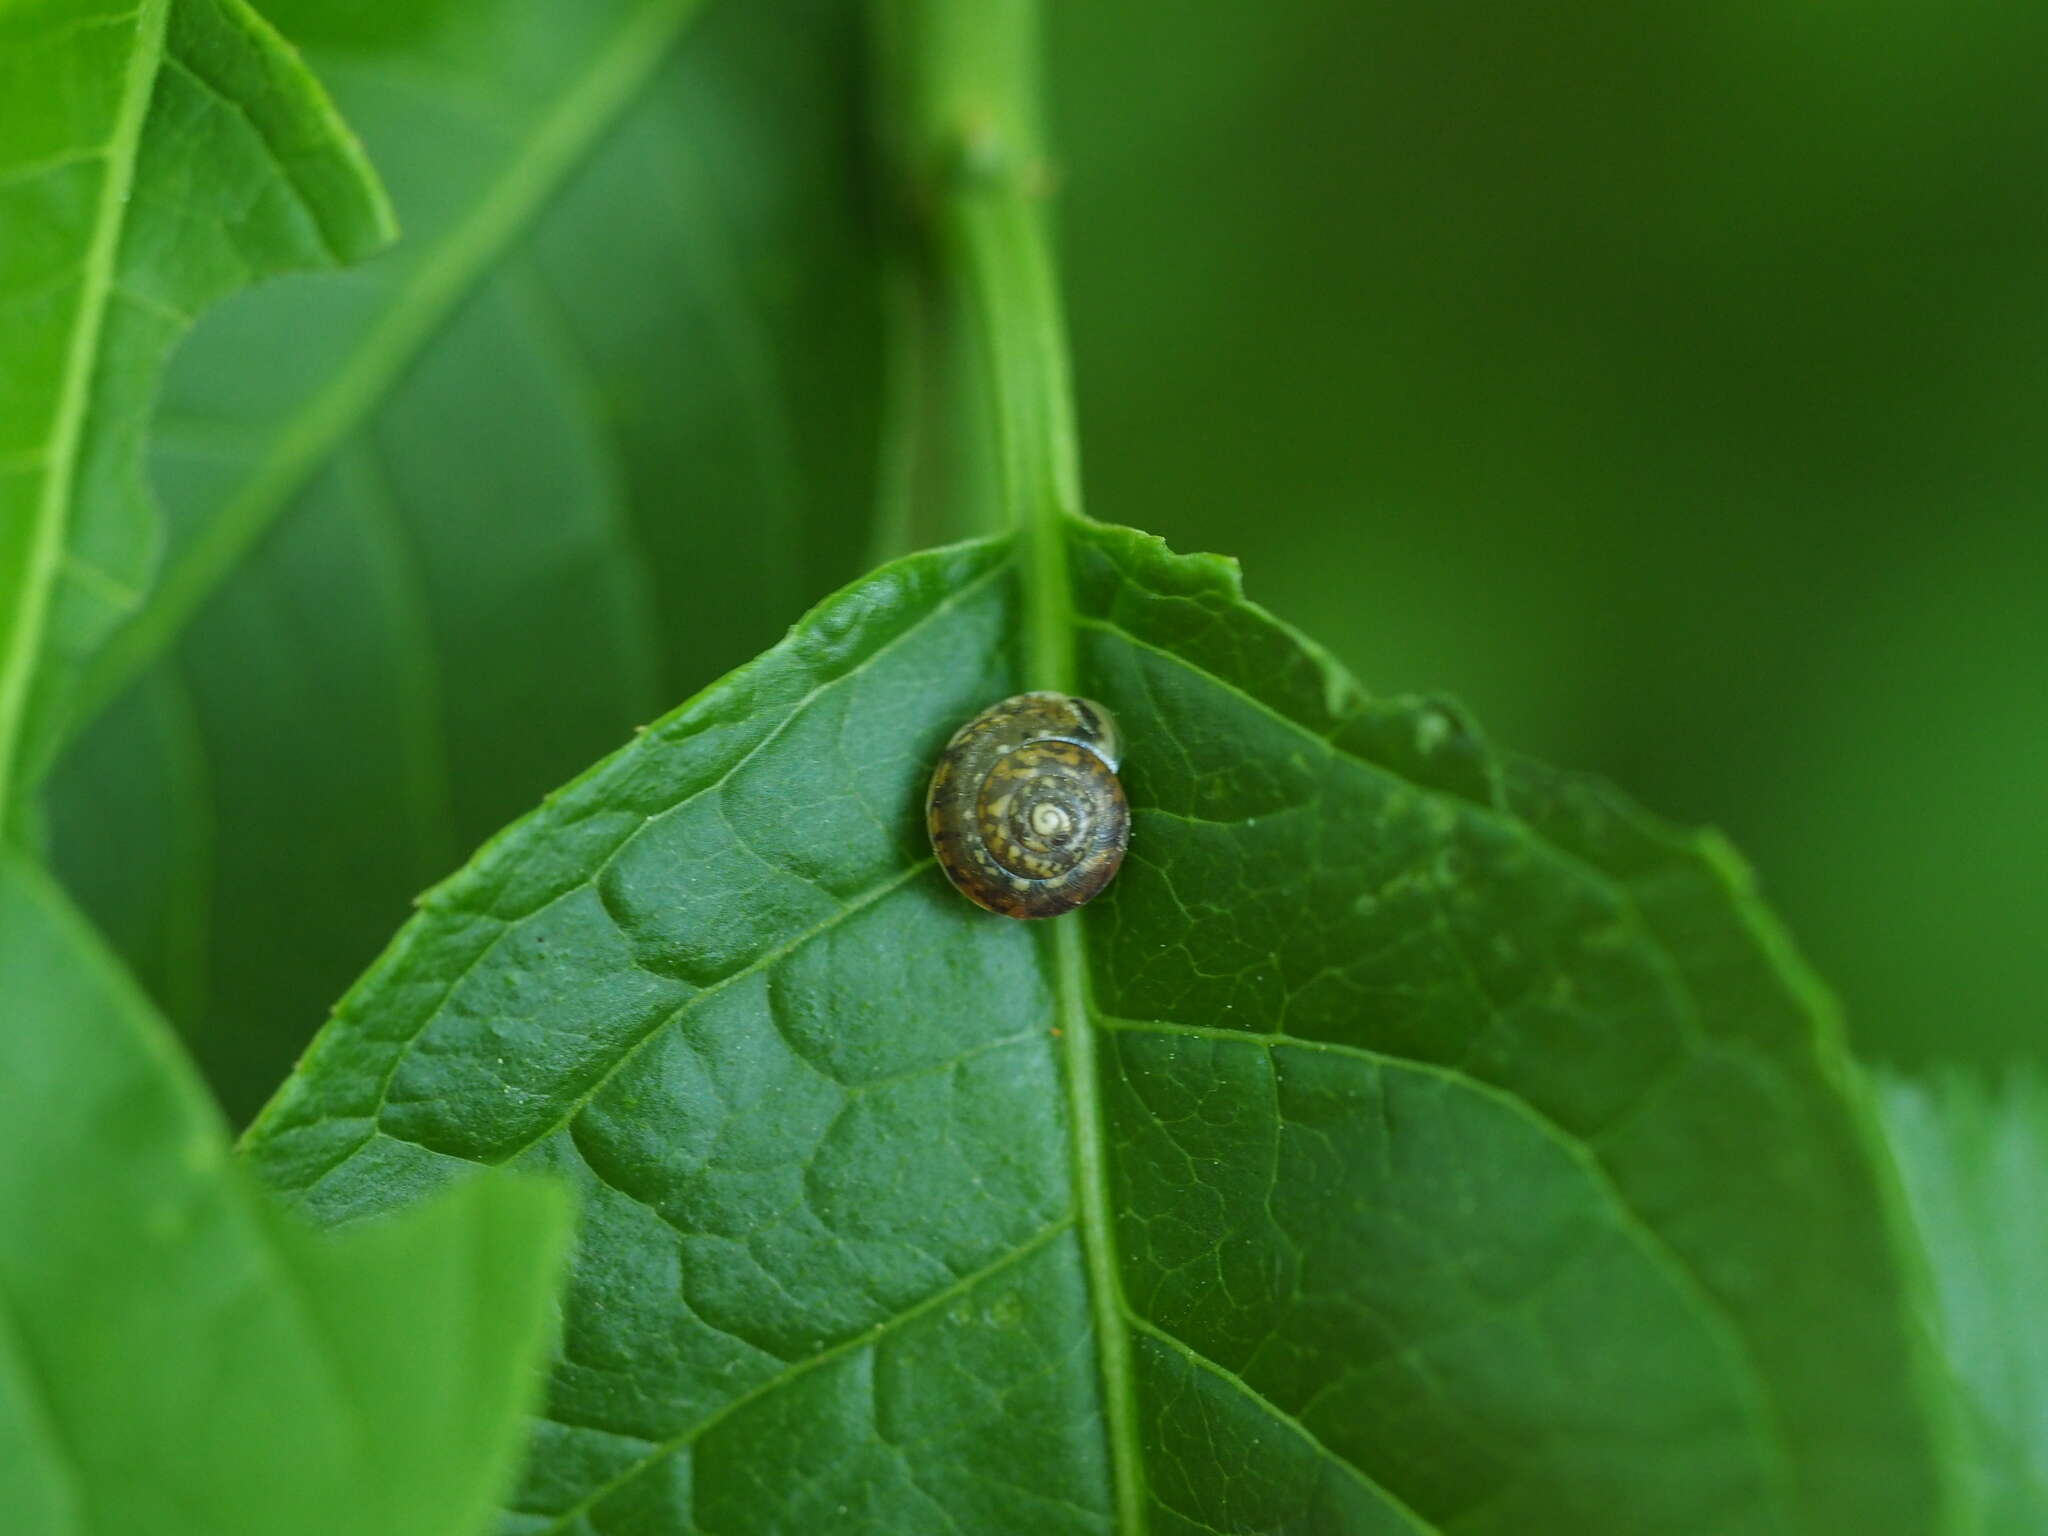 Image of girdled snail